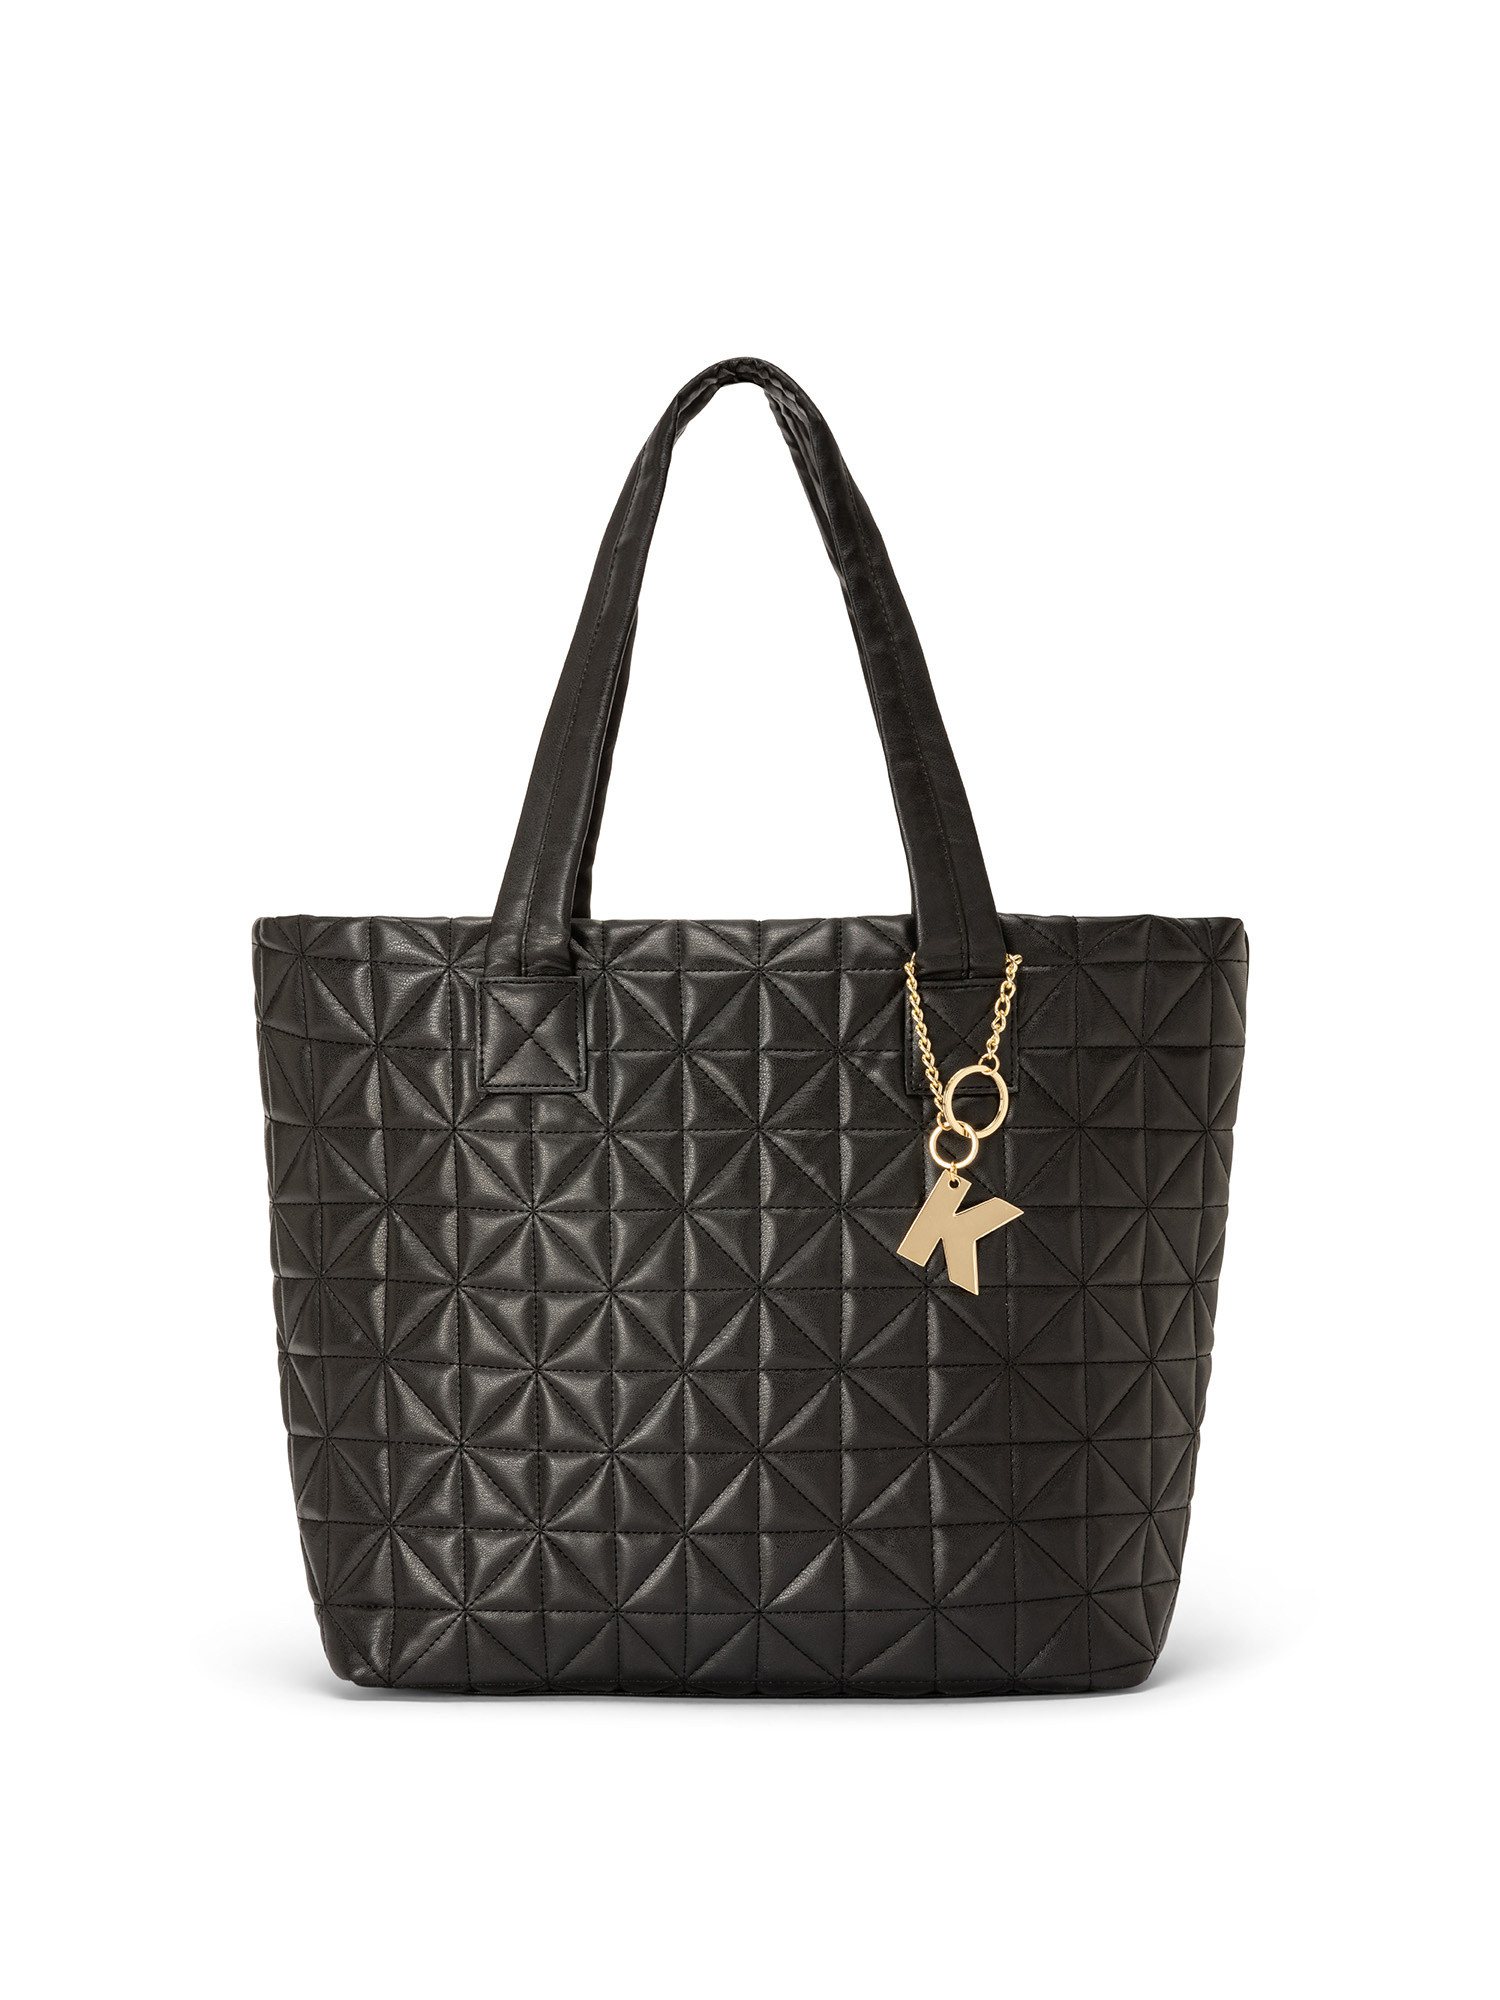 Koan - Shopping bag with motif, Black, large image number 0